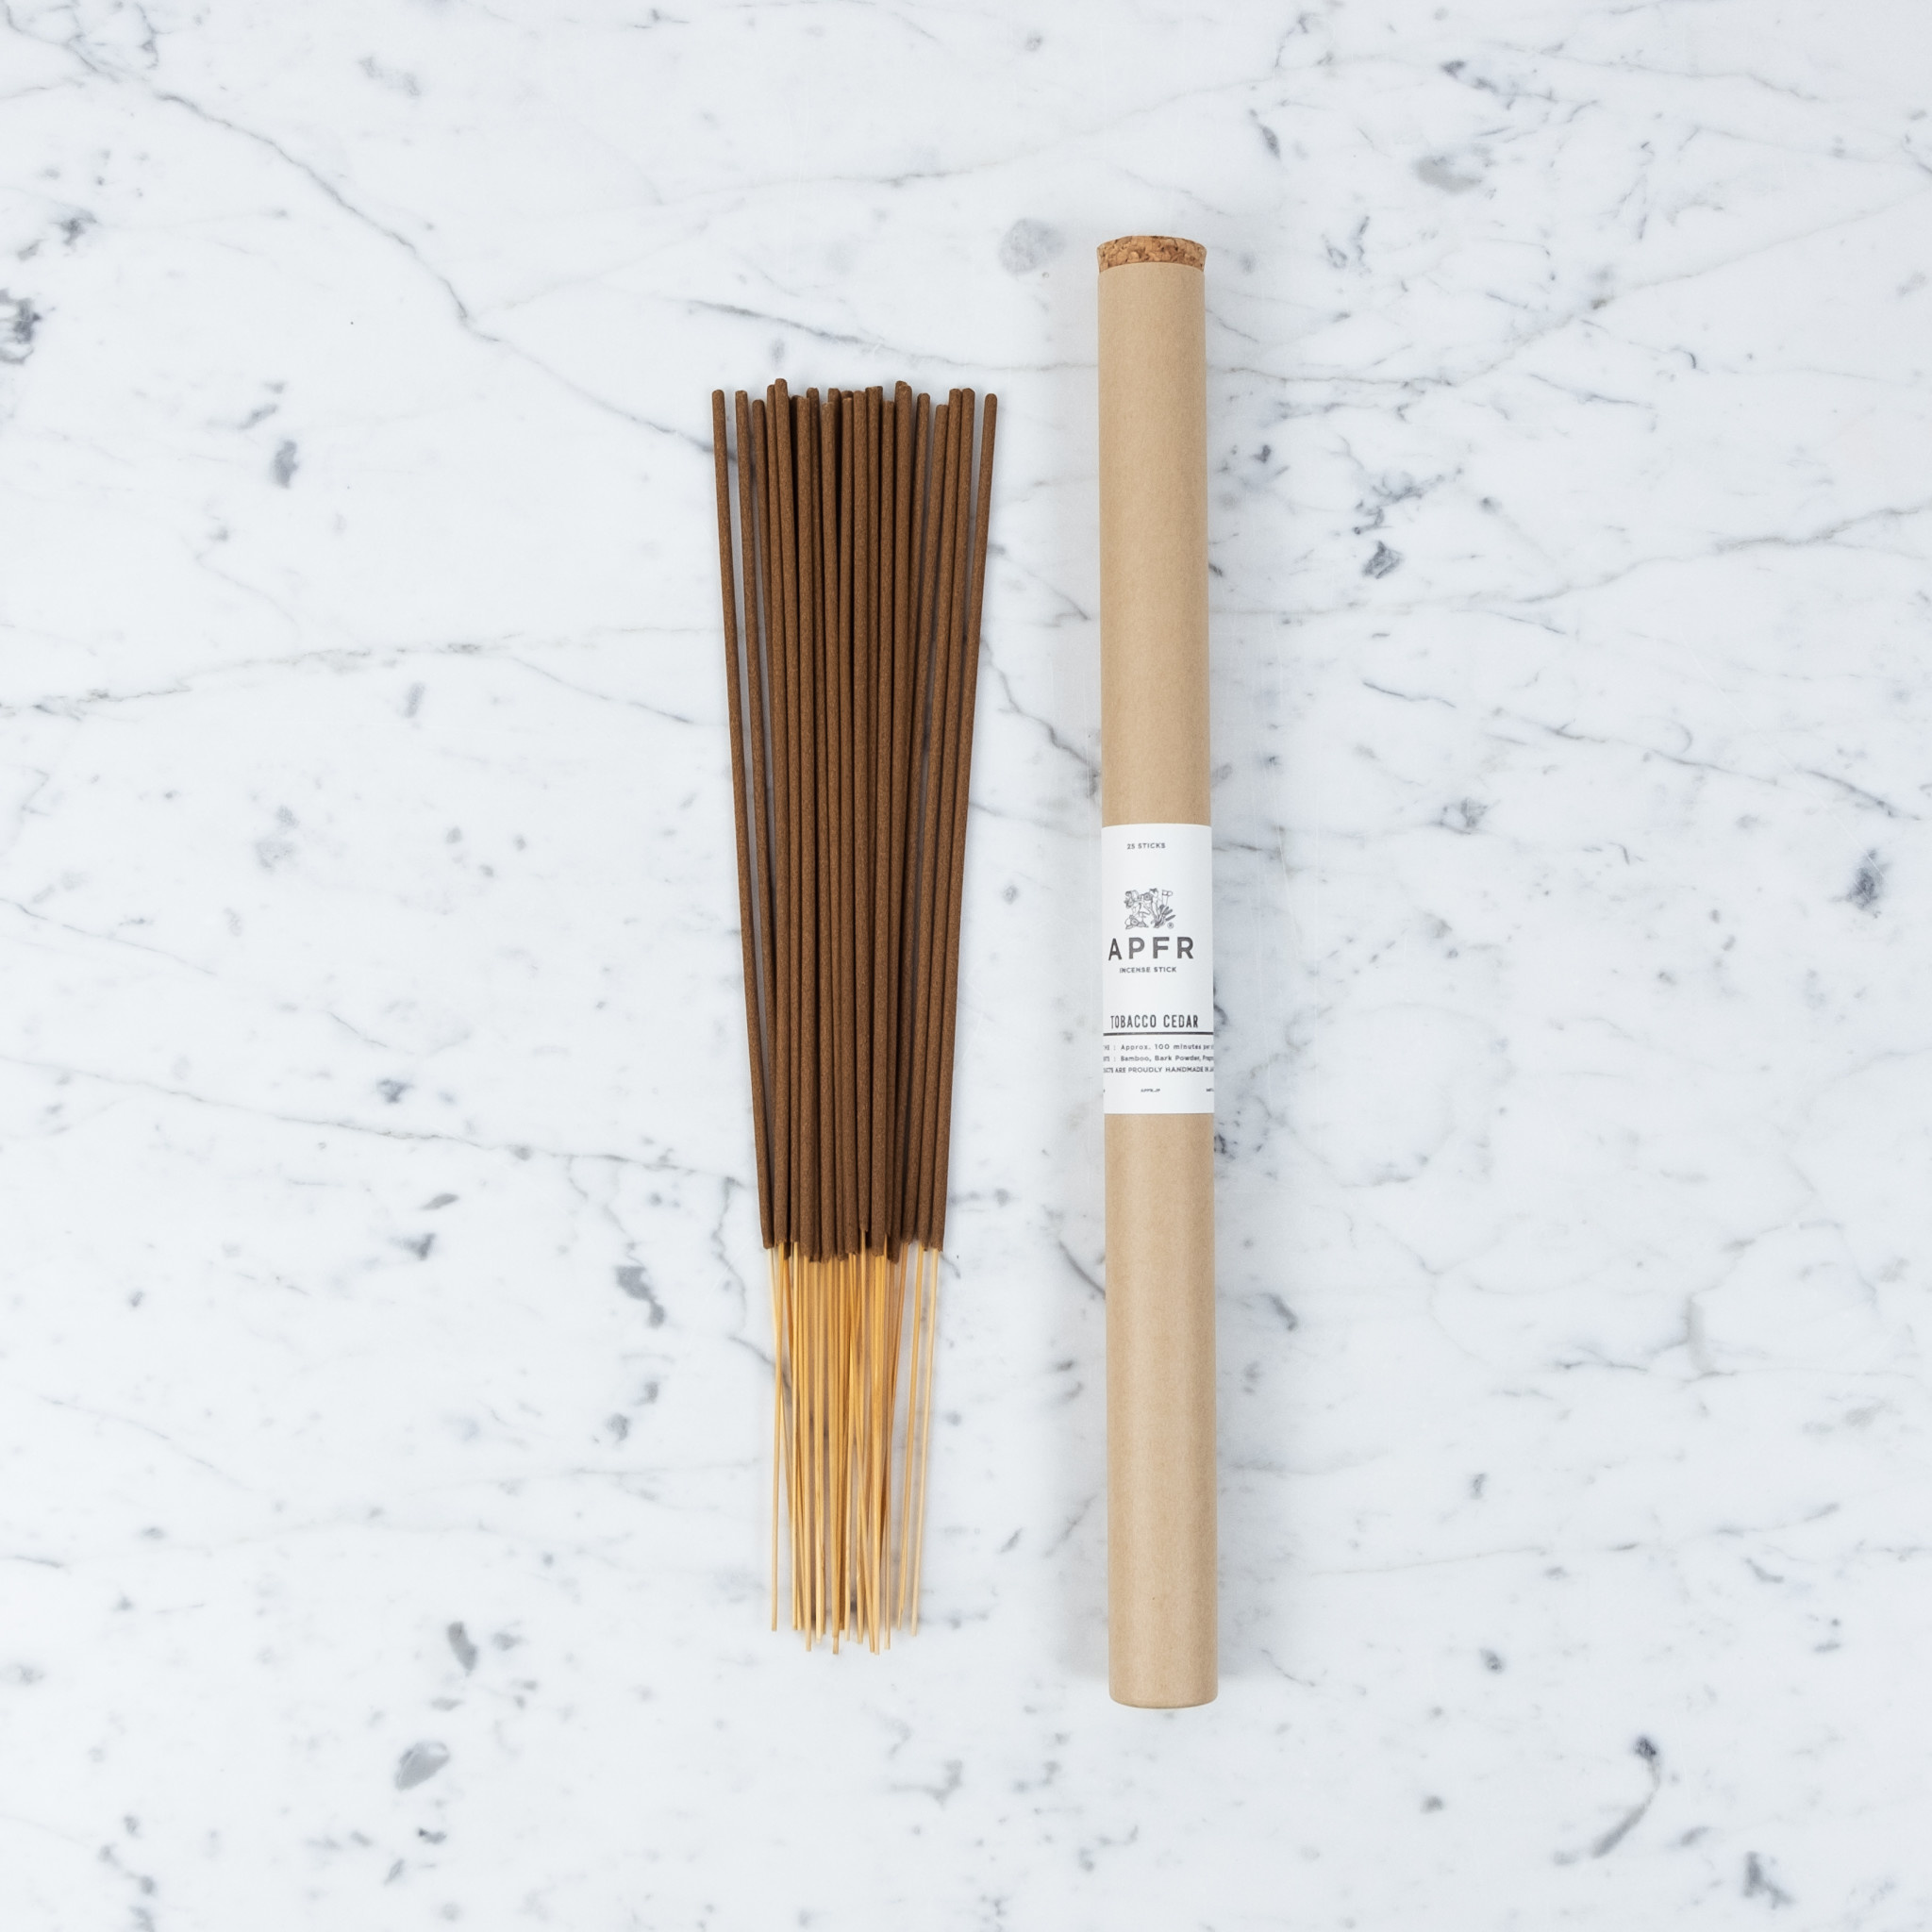 APFR Bamboo Incense - Tobacco Cedar